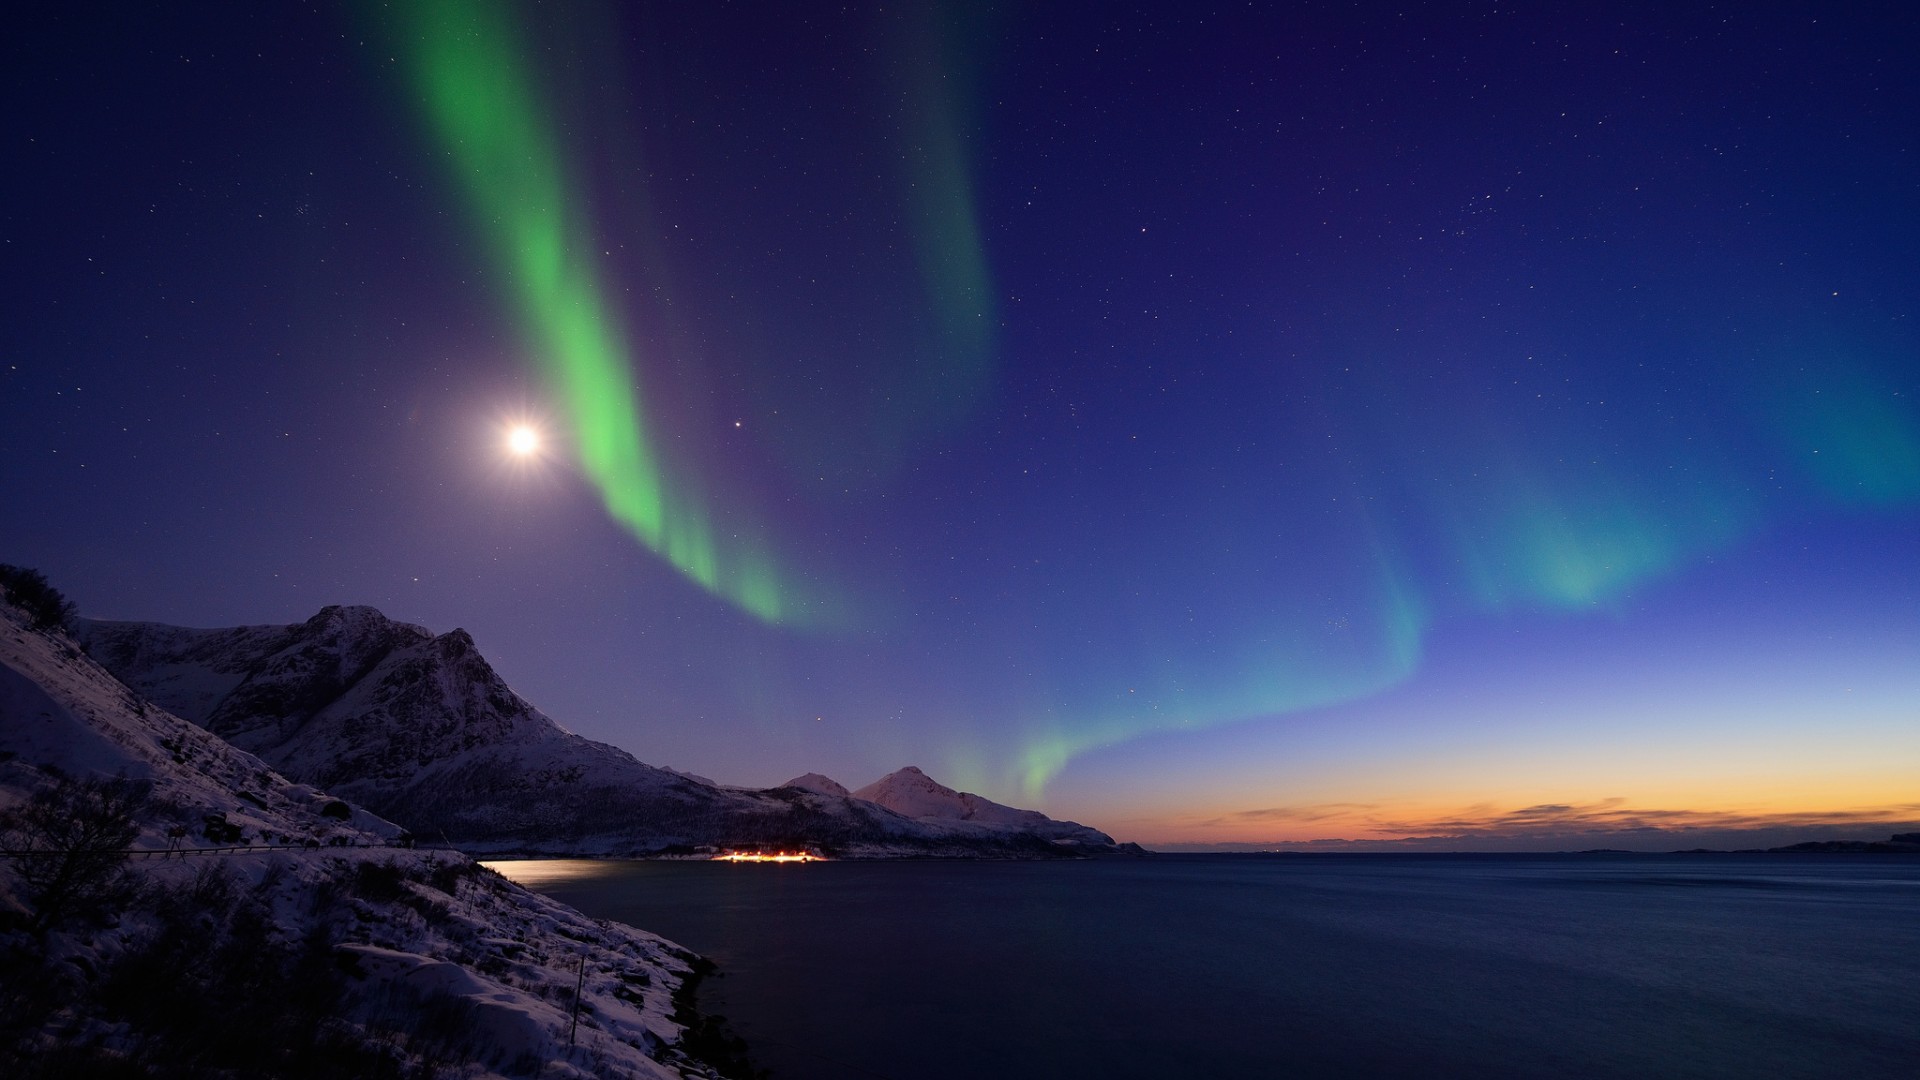 挪威,北极光,夜晚,山脉图片,风景桌面壁纸